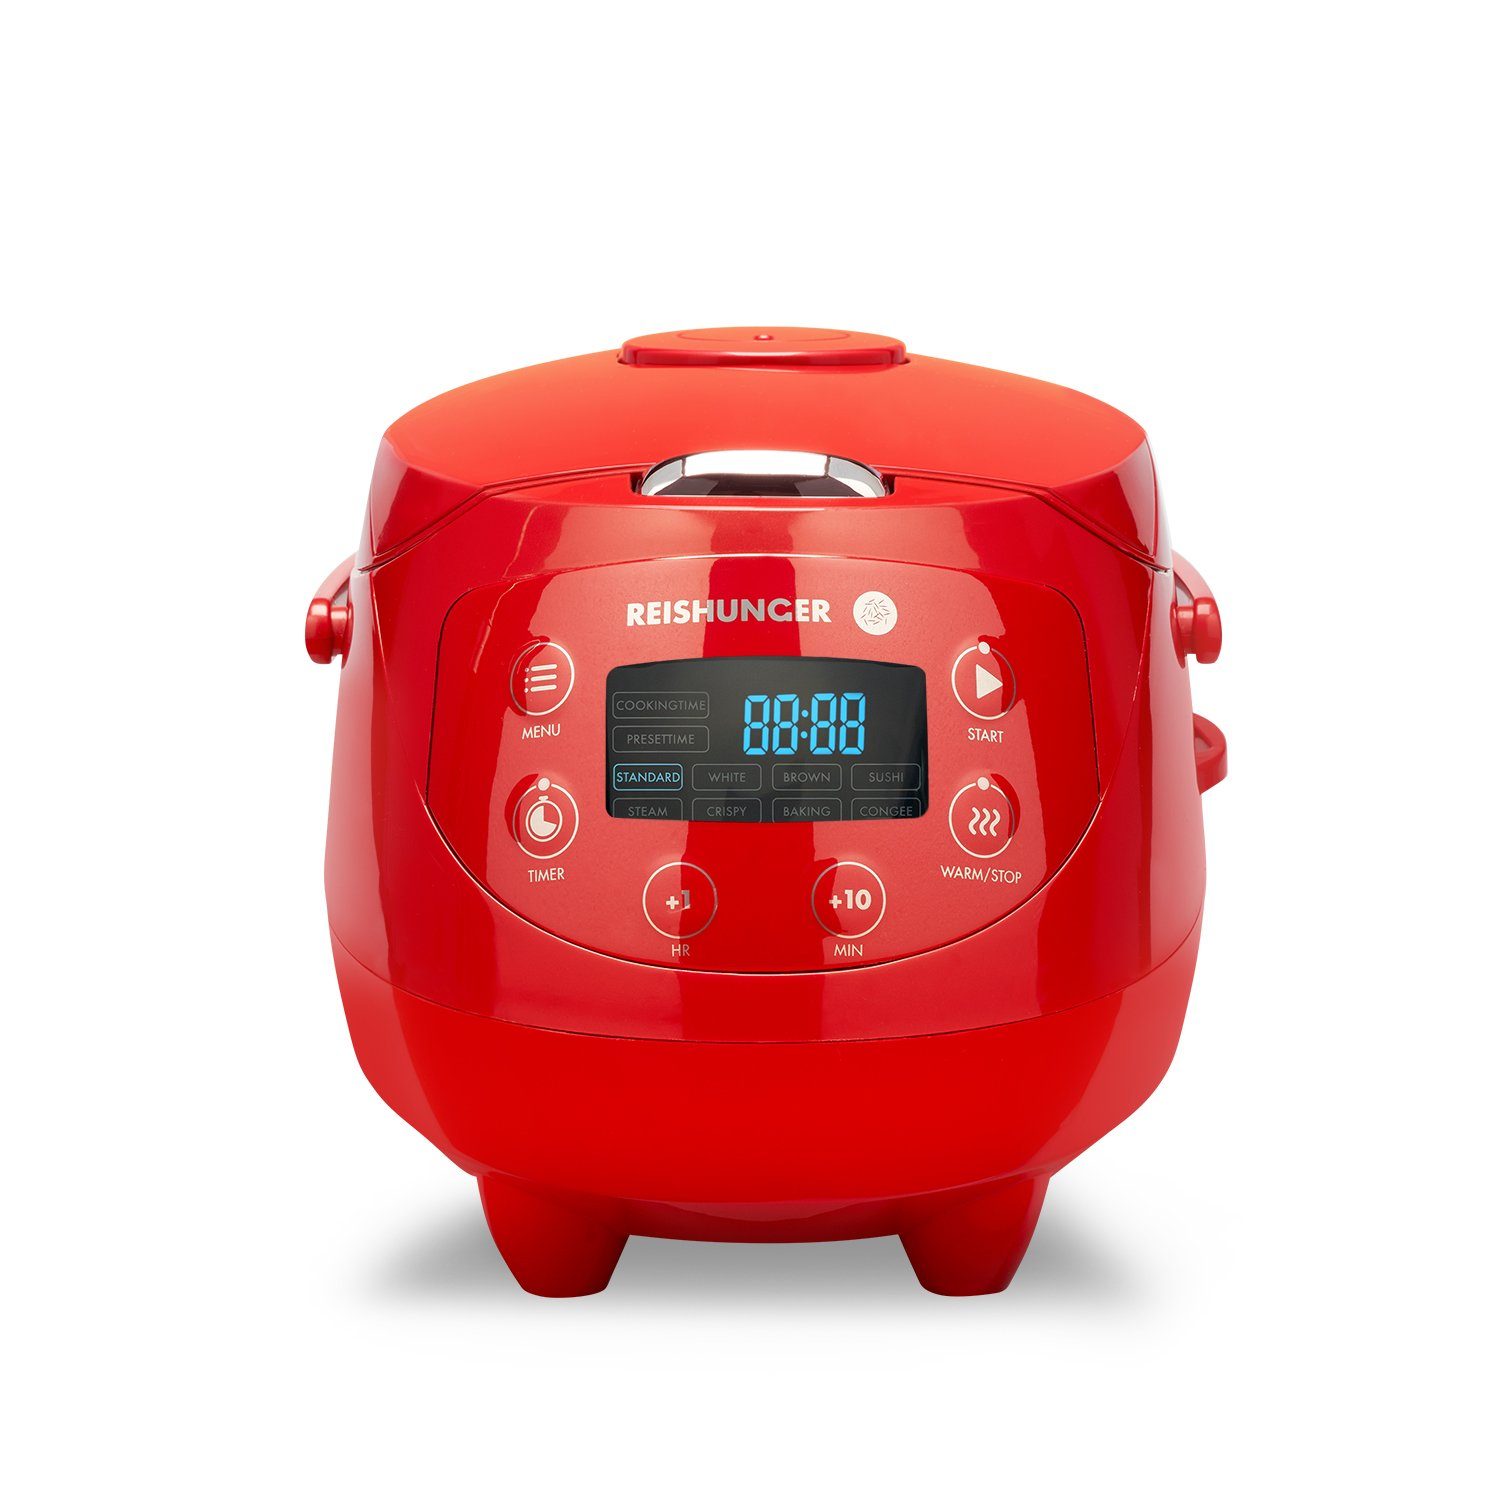 Reishunger Reiskocher - Digitaler Mini Reiskocher, 350 W, Dämpfeinsatz, Messbecher, Reislöffel, Timer- und Warmhaltefunktion Rot